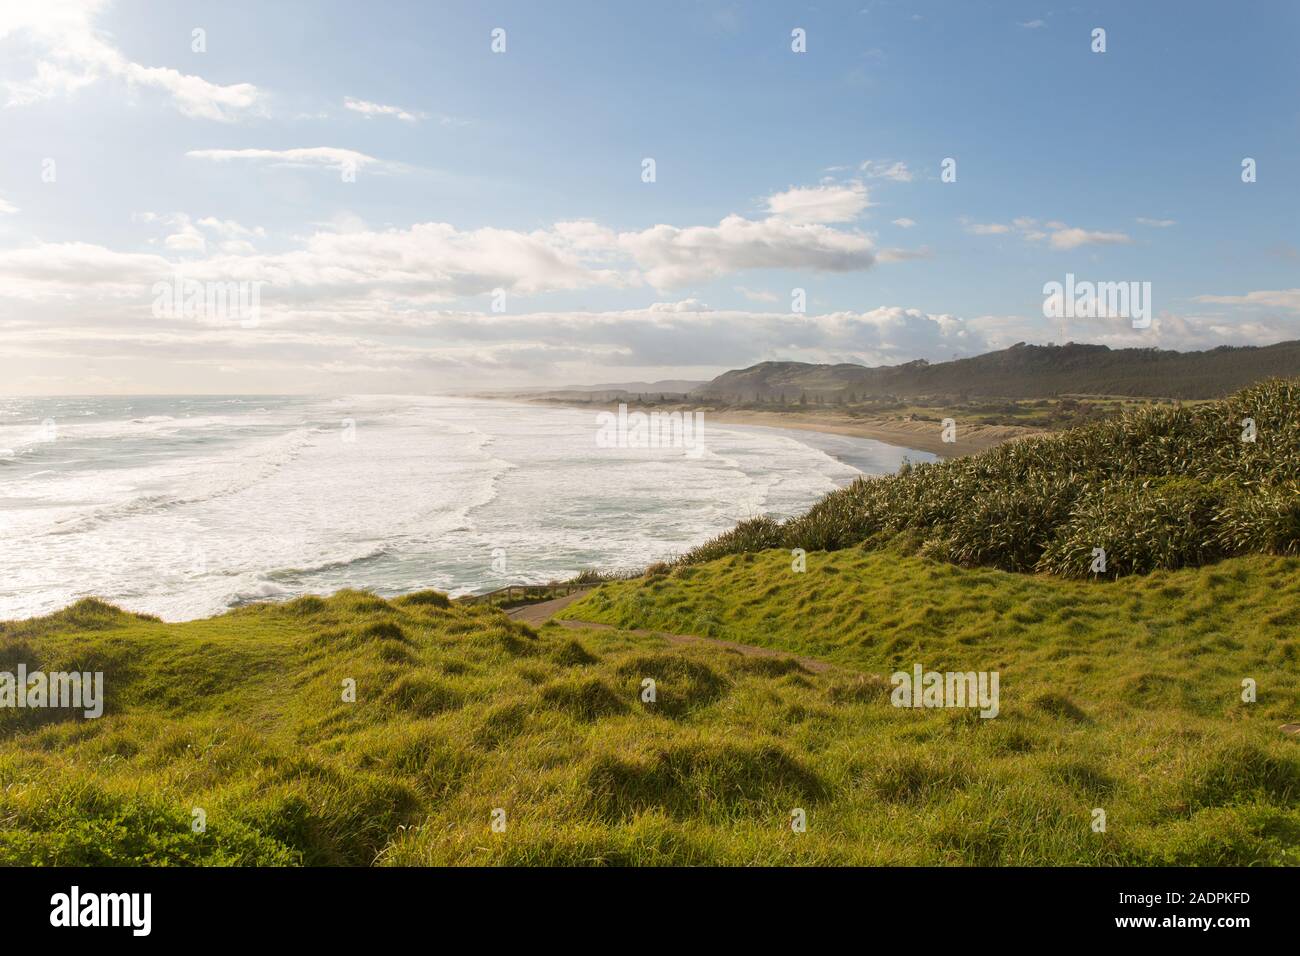 Une image paysage de Muriwai Beach sur la côte ouest, près de la ville d'Auckland, Nouvelle-Zélande Banque D'Images